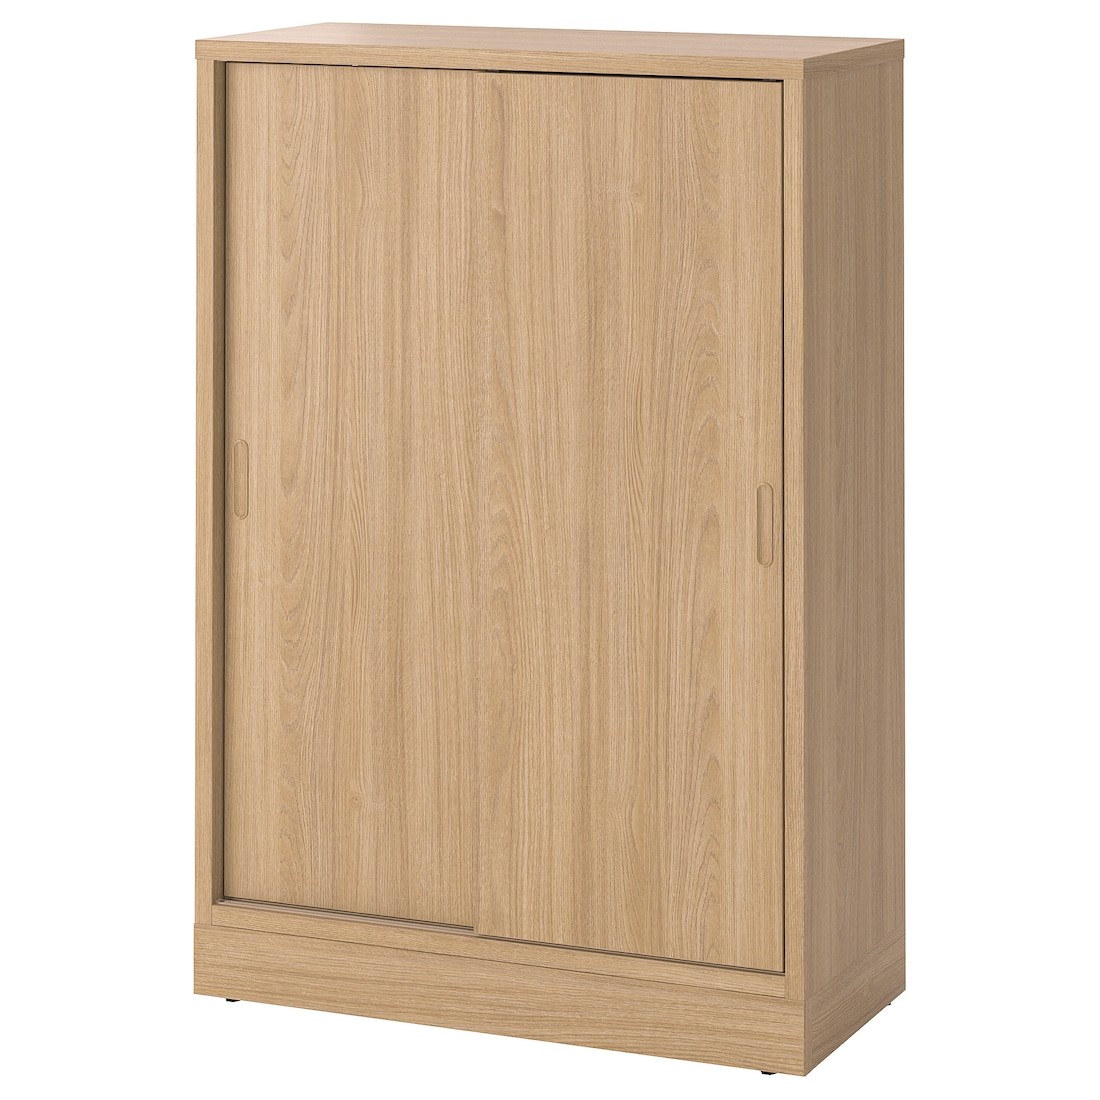 TONSTAD Шкаф с раздвижными дверцами, дубовый шпон, 82x37x120 см